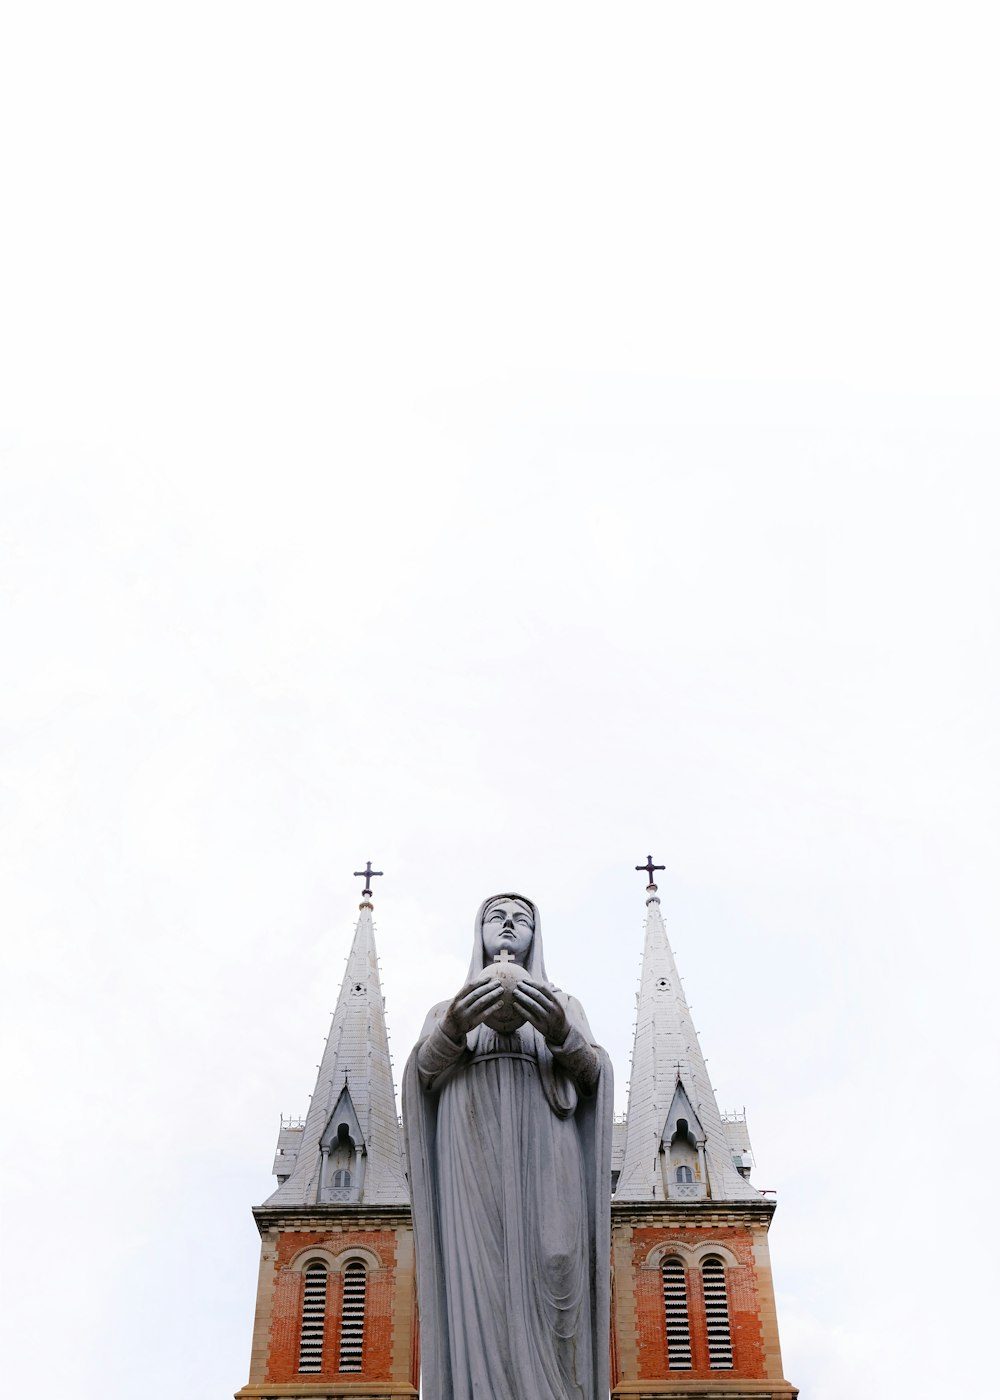 Low-Angle-Fotografie religiöser Skulpturen außerhalb der Kathedrale während des Tages